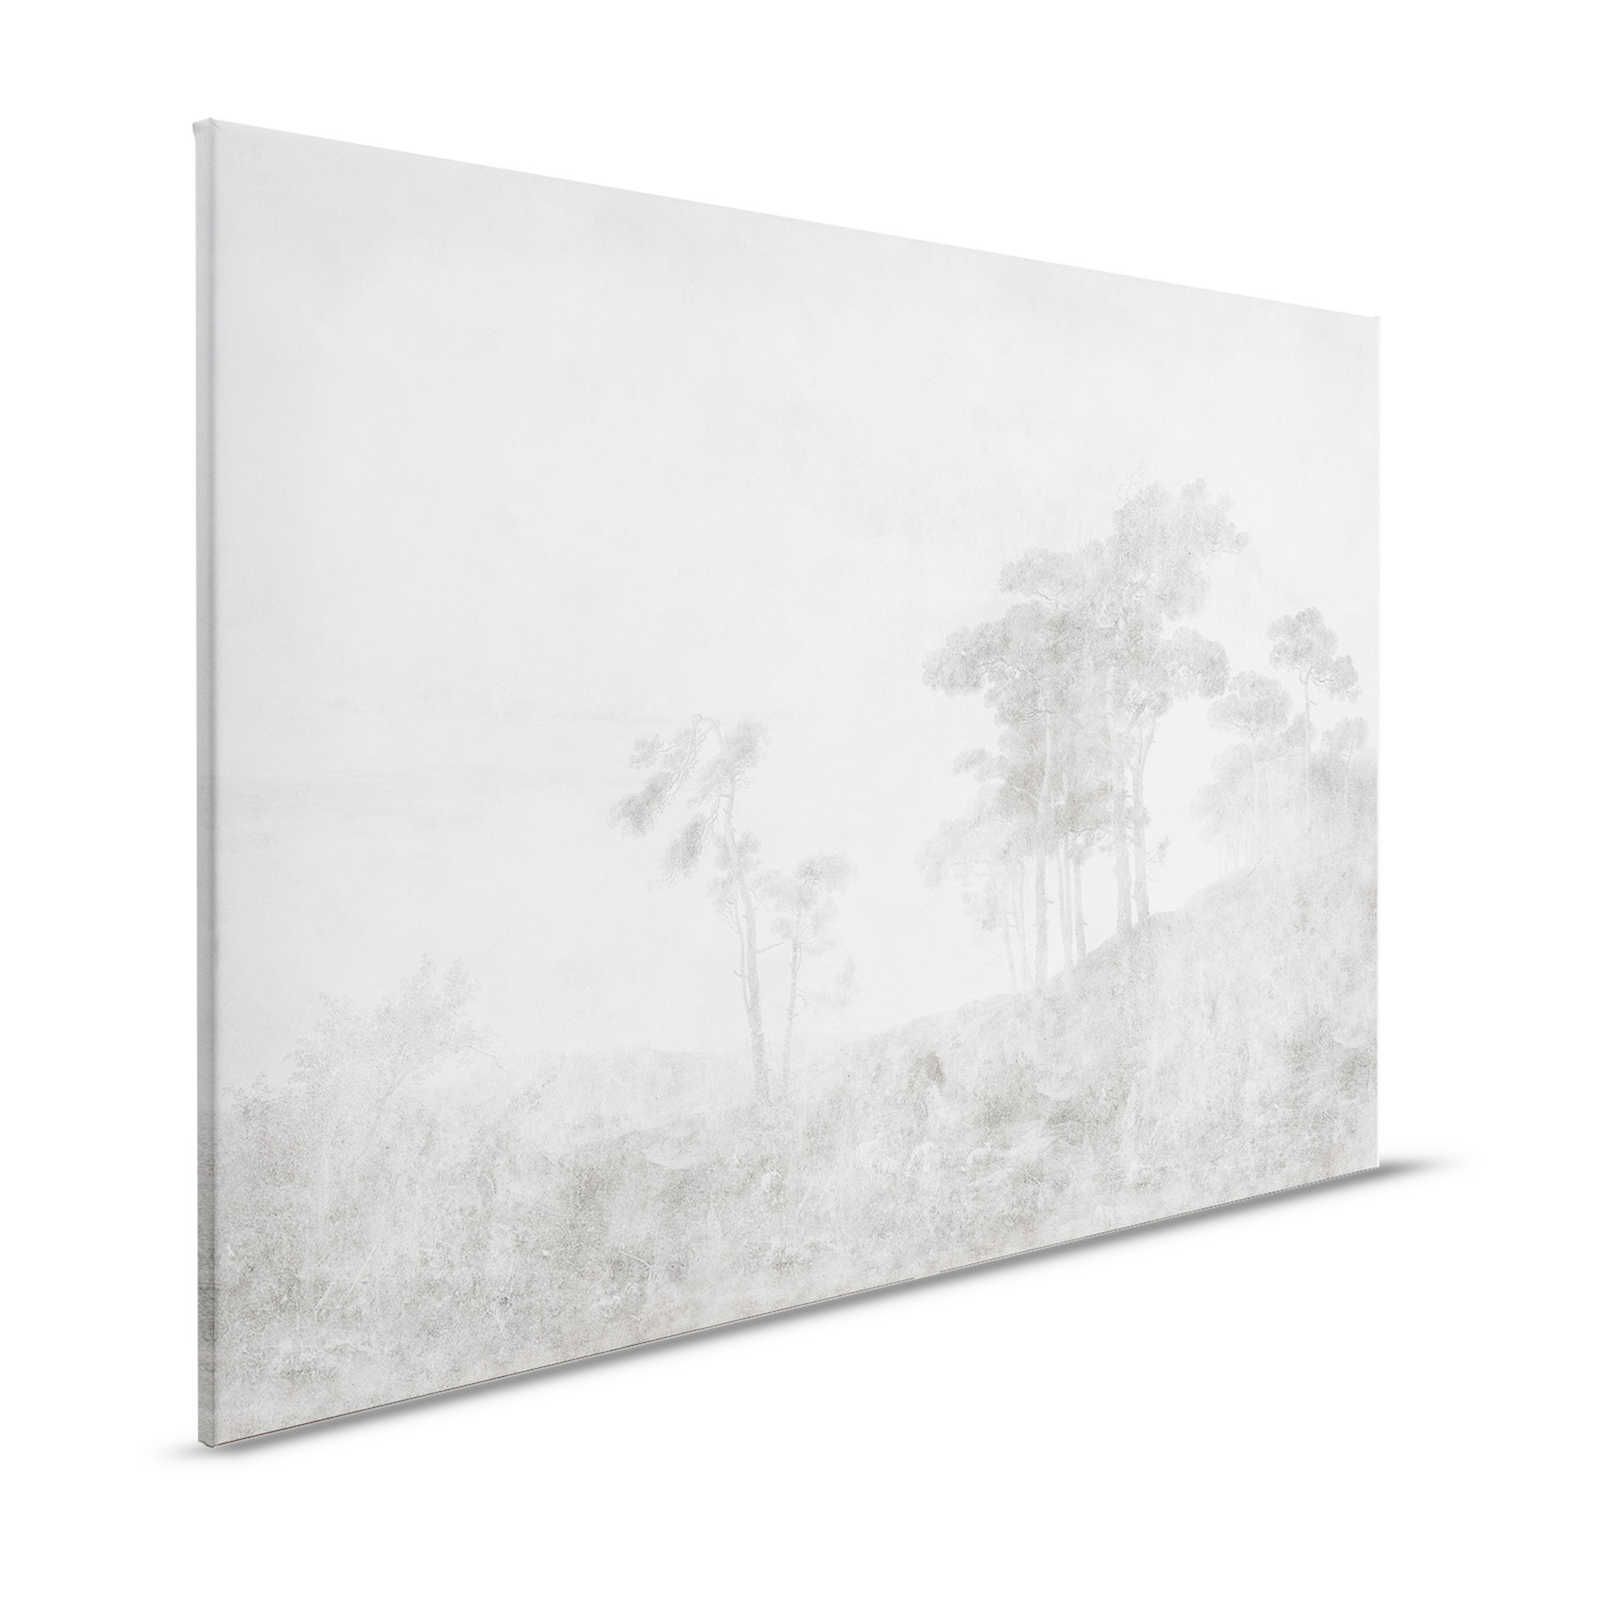 Romantic Grove 2 - Landscape Canvas Painting Vintage Style - 1.20 m x 0.80 m
